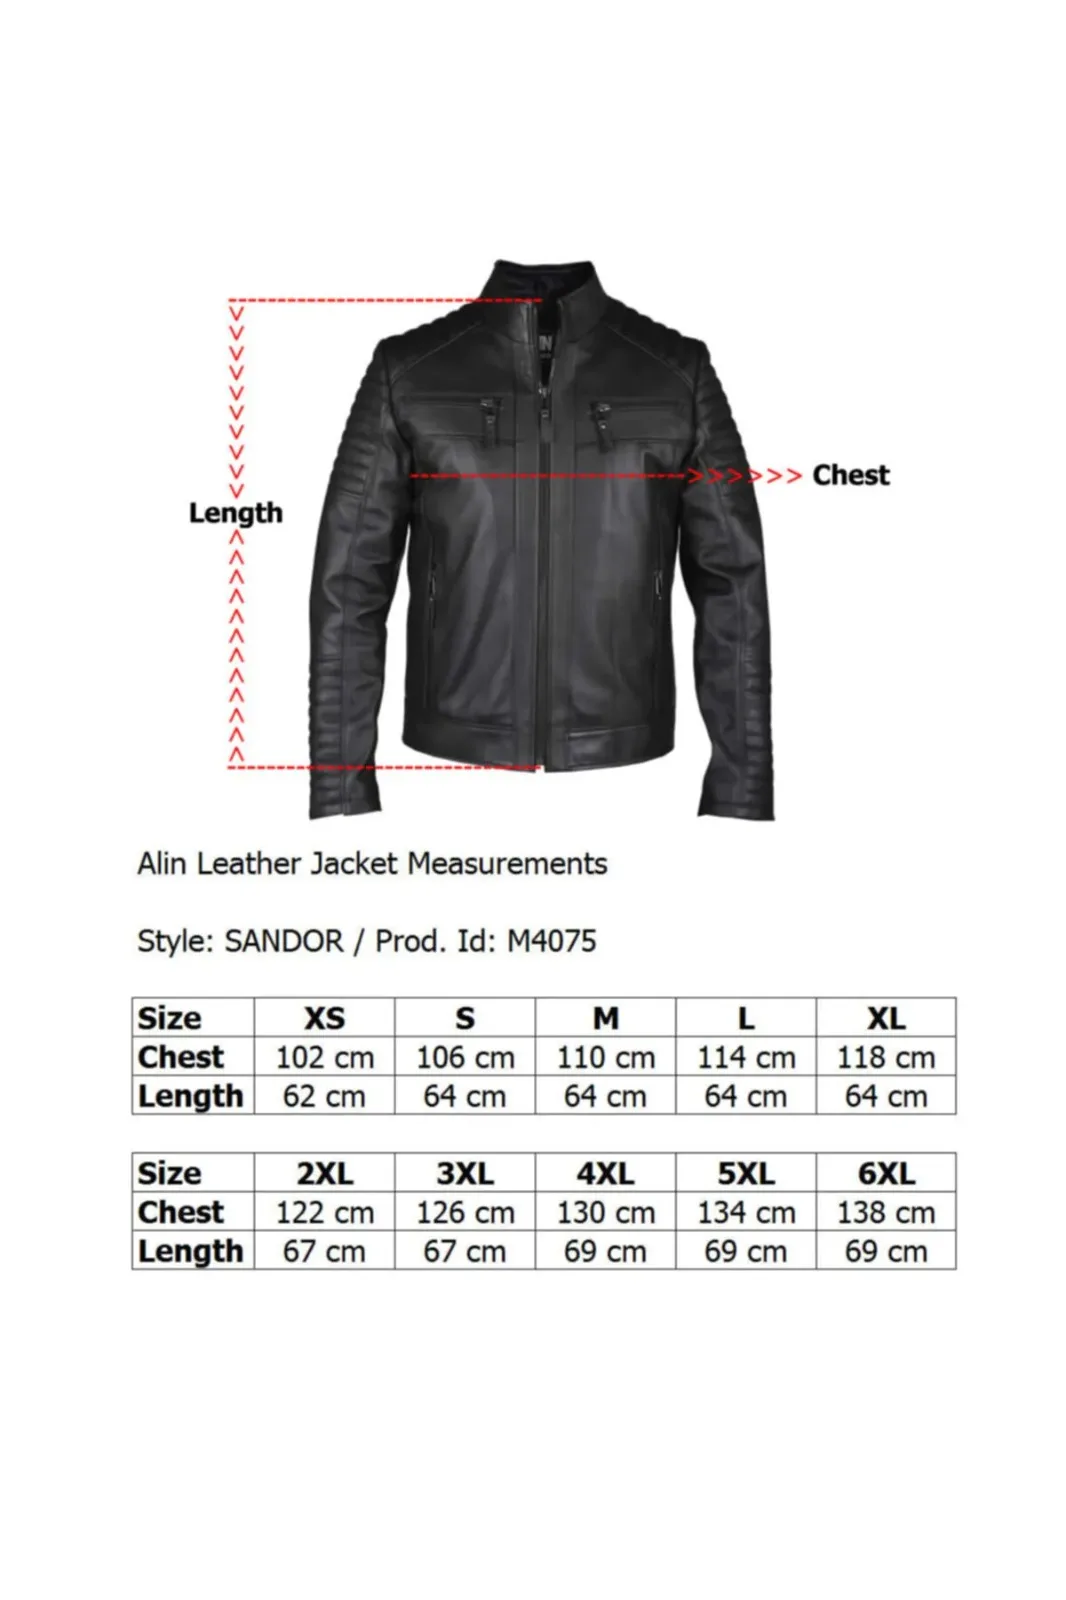 sheepskin jacket genuine leather men's jacket sport model original lambskin brown colour furless softy 2022 trend appearance made in turkey e-143 sheepskin coat